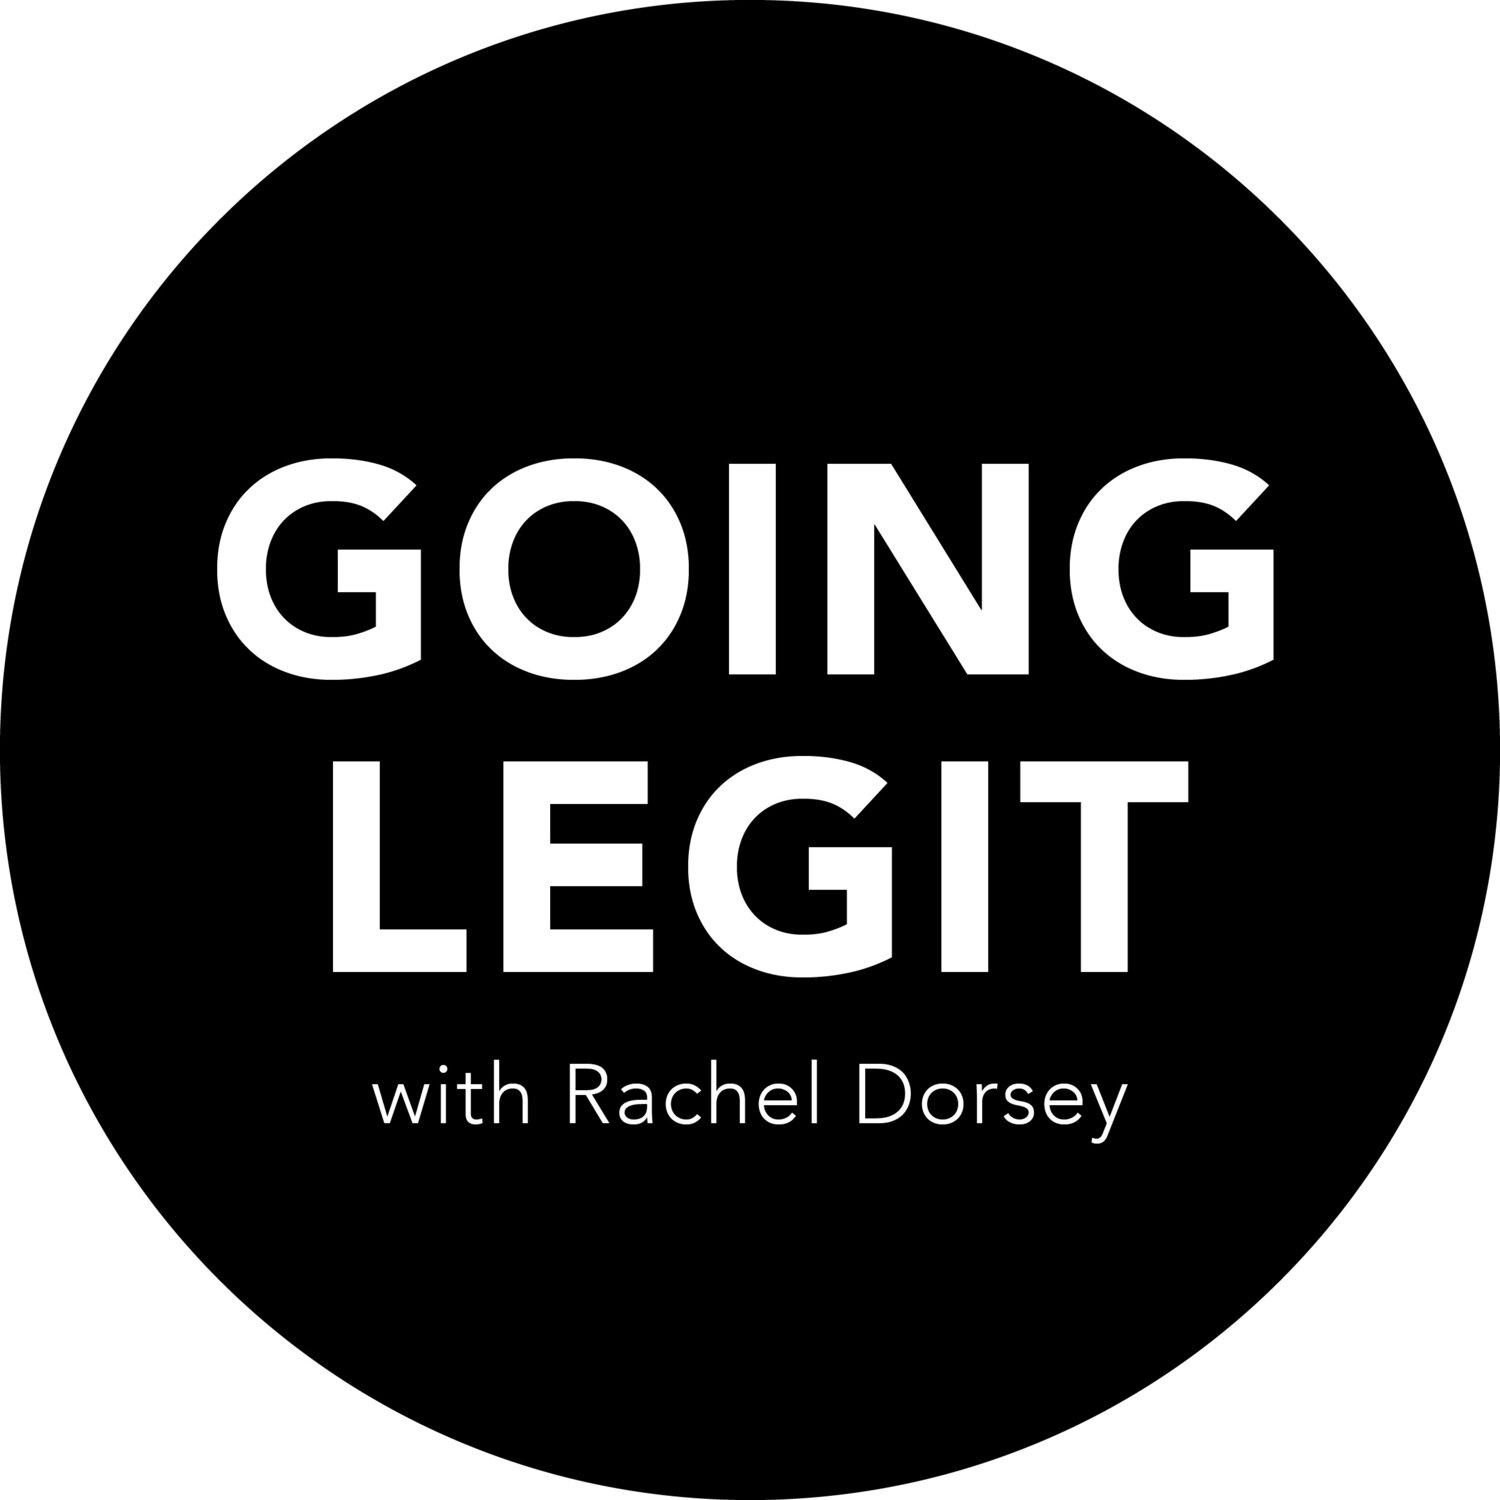 Going Legit with Rachel Dorsey